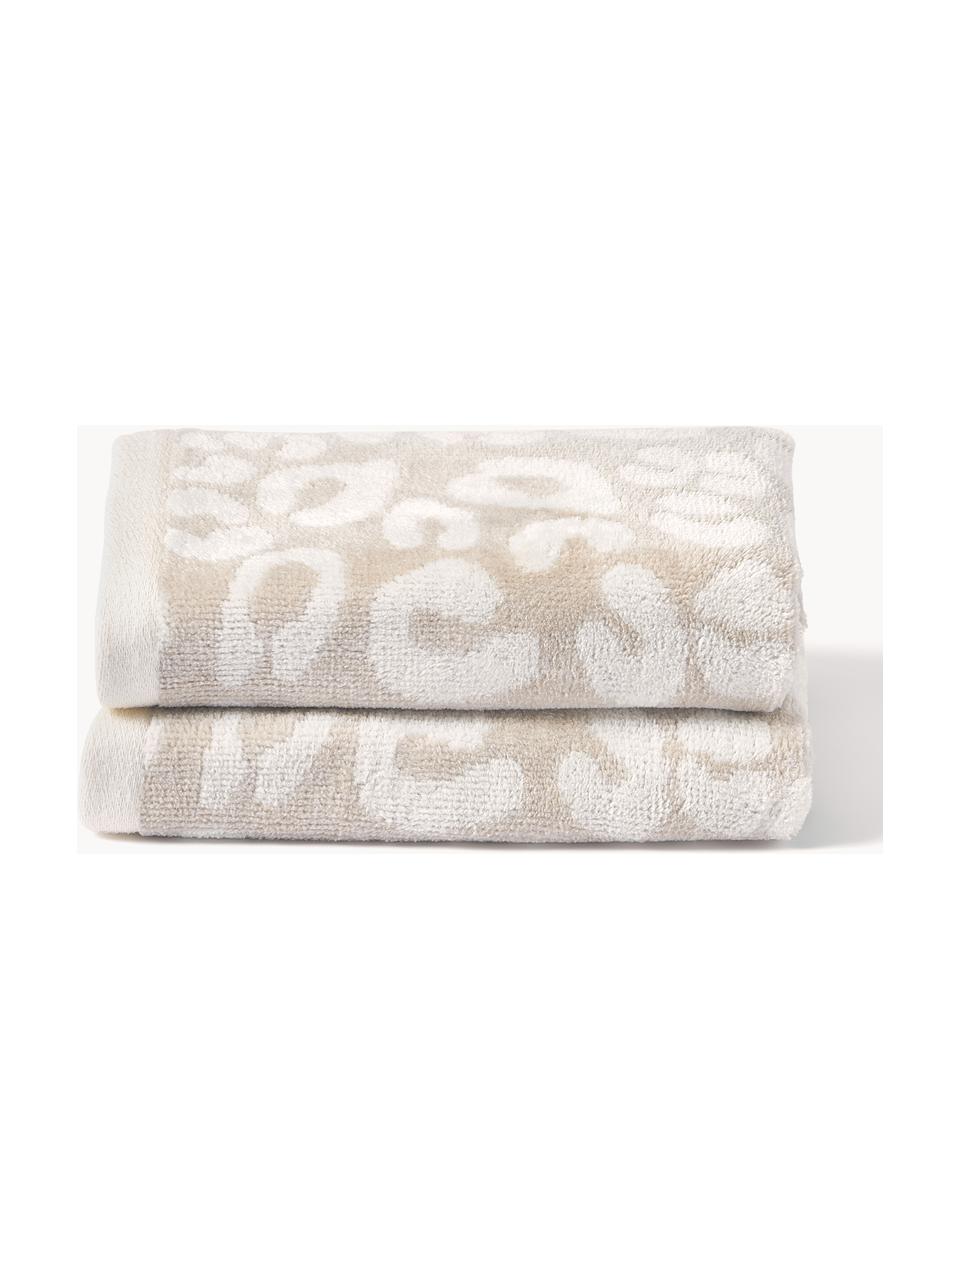 Ręcznik Leo, różne rozmiary, Beżowy, złamana biel, Ręcznik do rąk, S 50 x D 100 cm